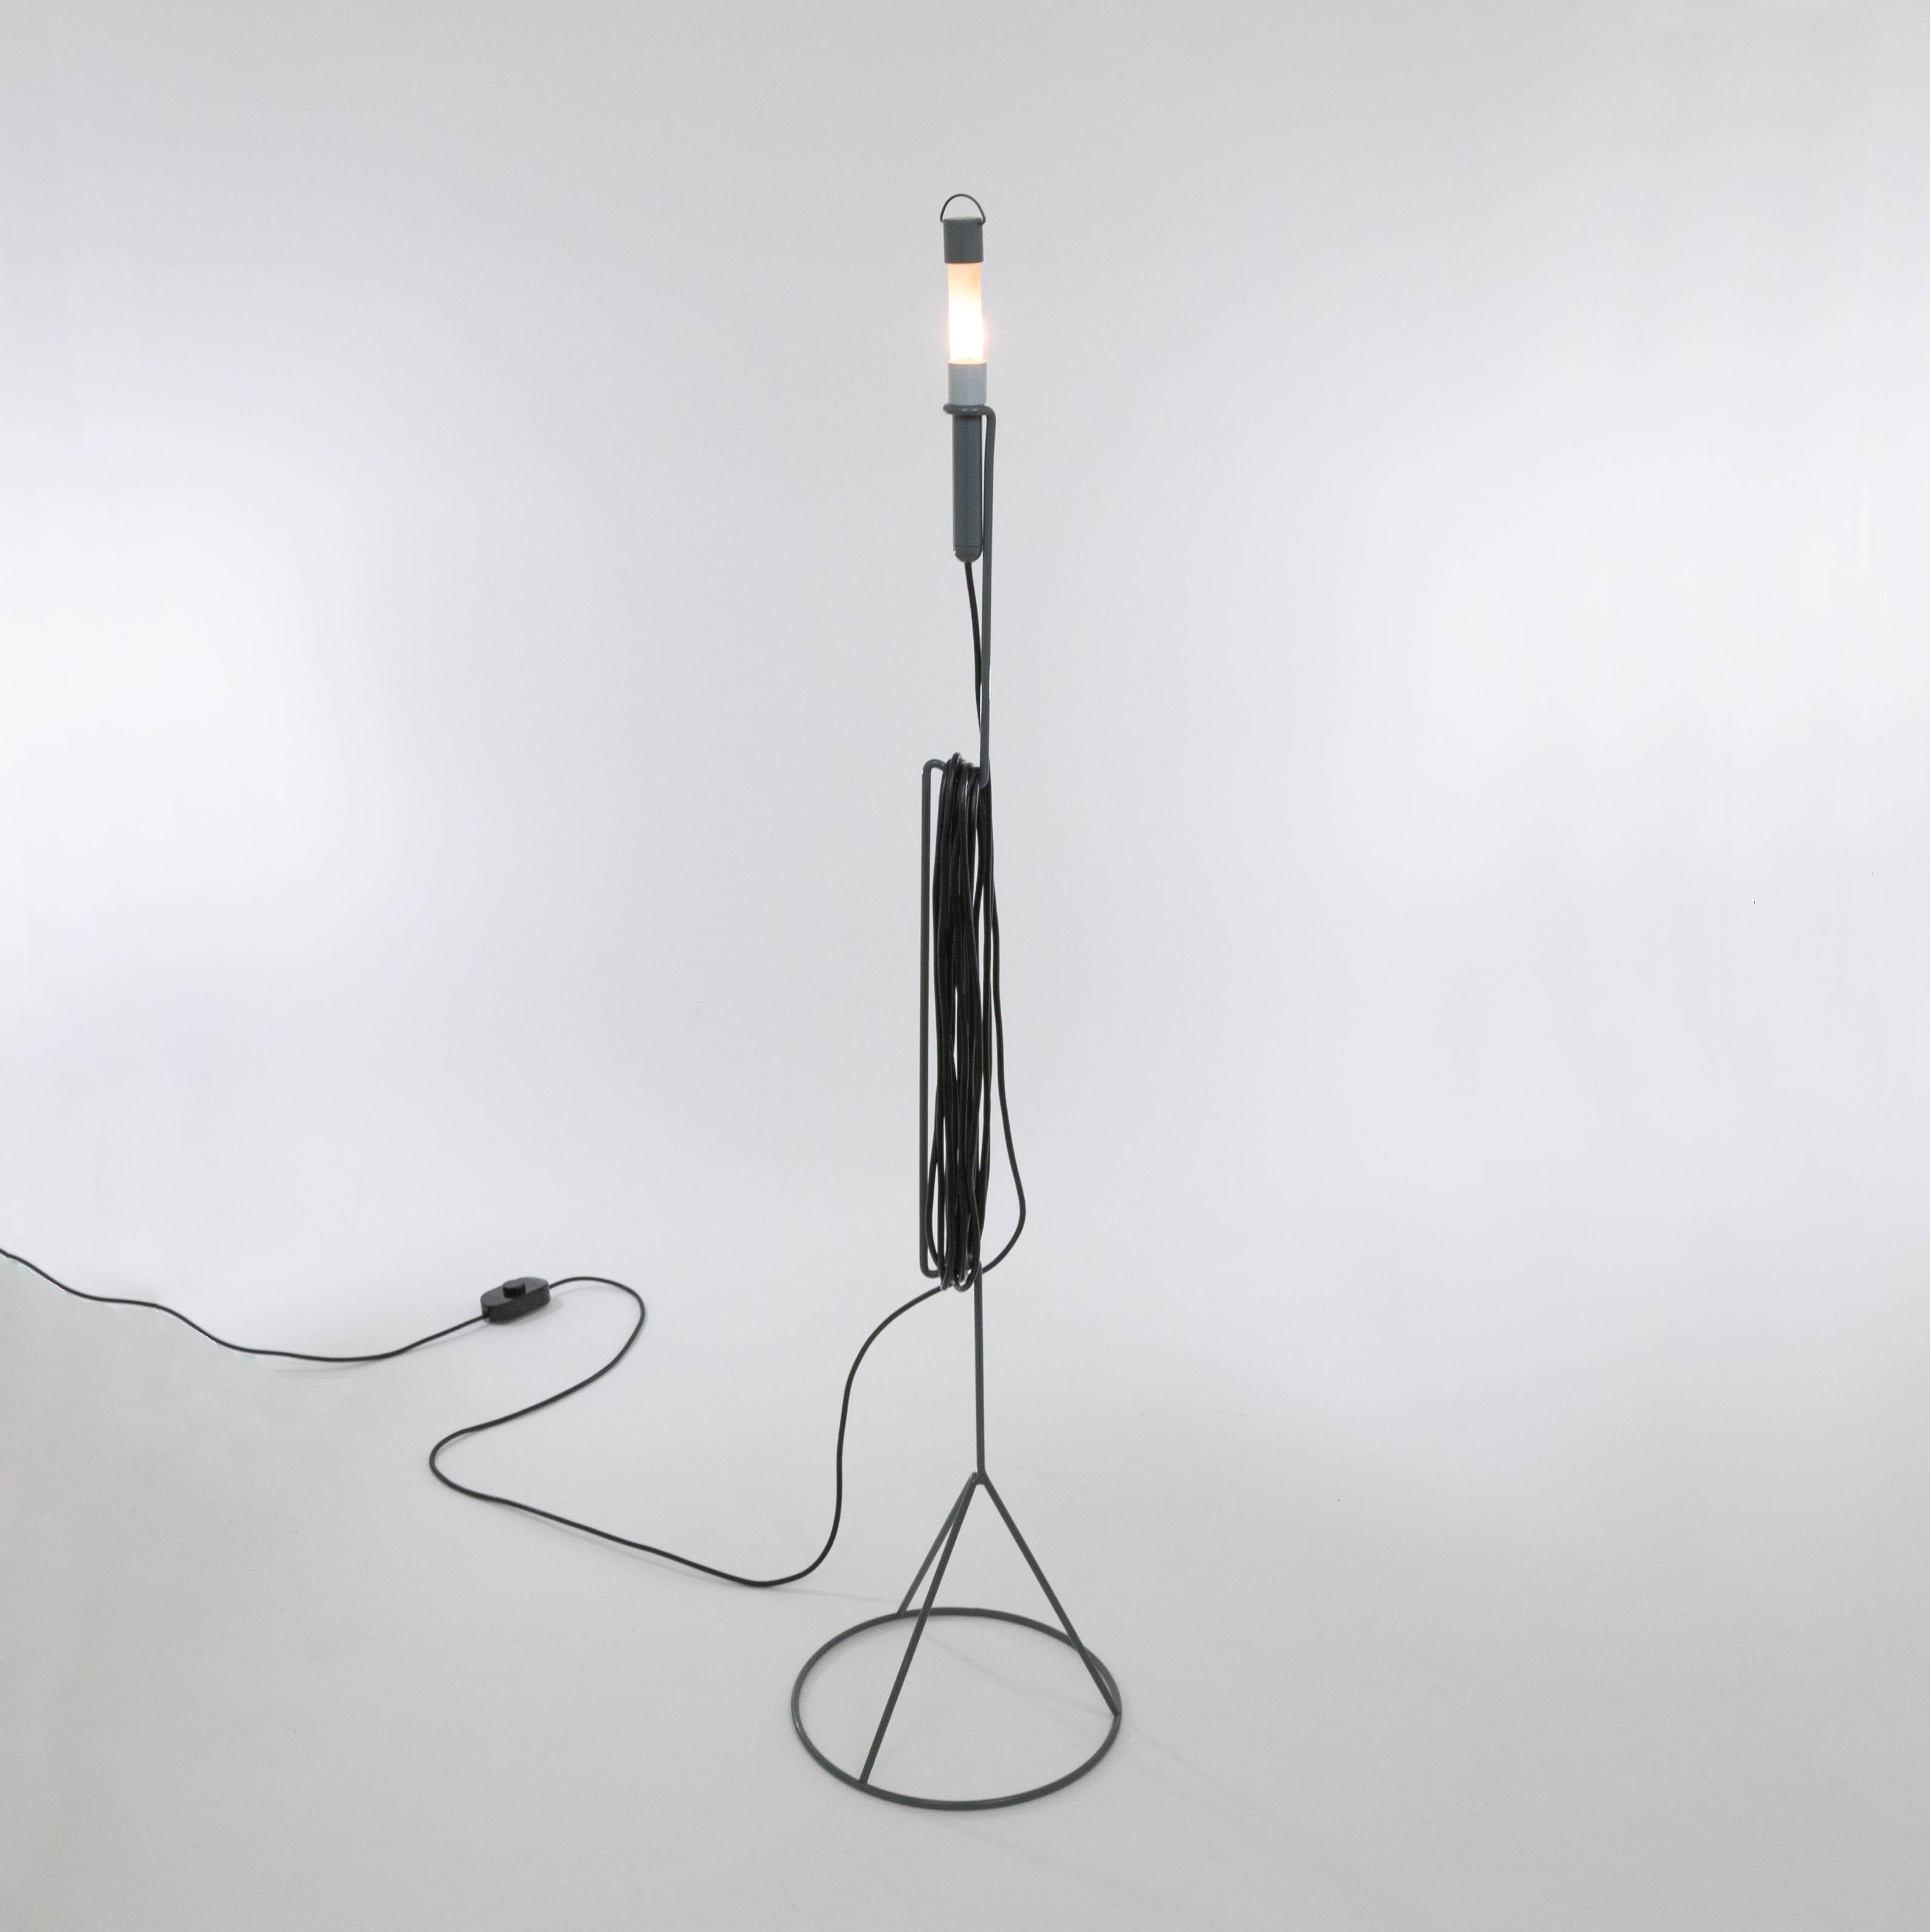 Lampadaire Edy conçu par Piero Castiglioni pour Fontana Arte en 1982.

Outre un lampadaire, la série de lampes basse tension Edy se compose d'une suspension, d'une applique et d'une lampe de table, chacune avec une armature métallique